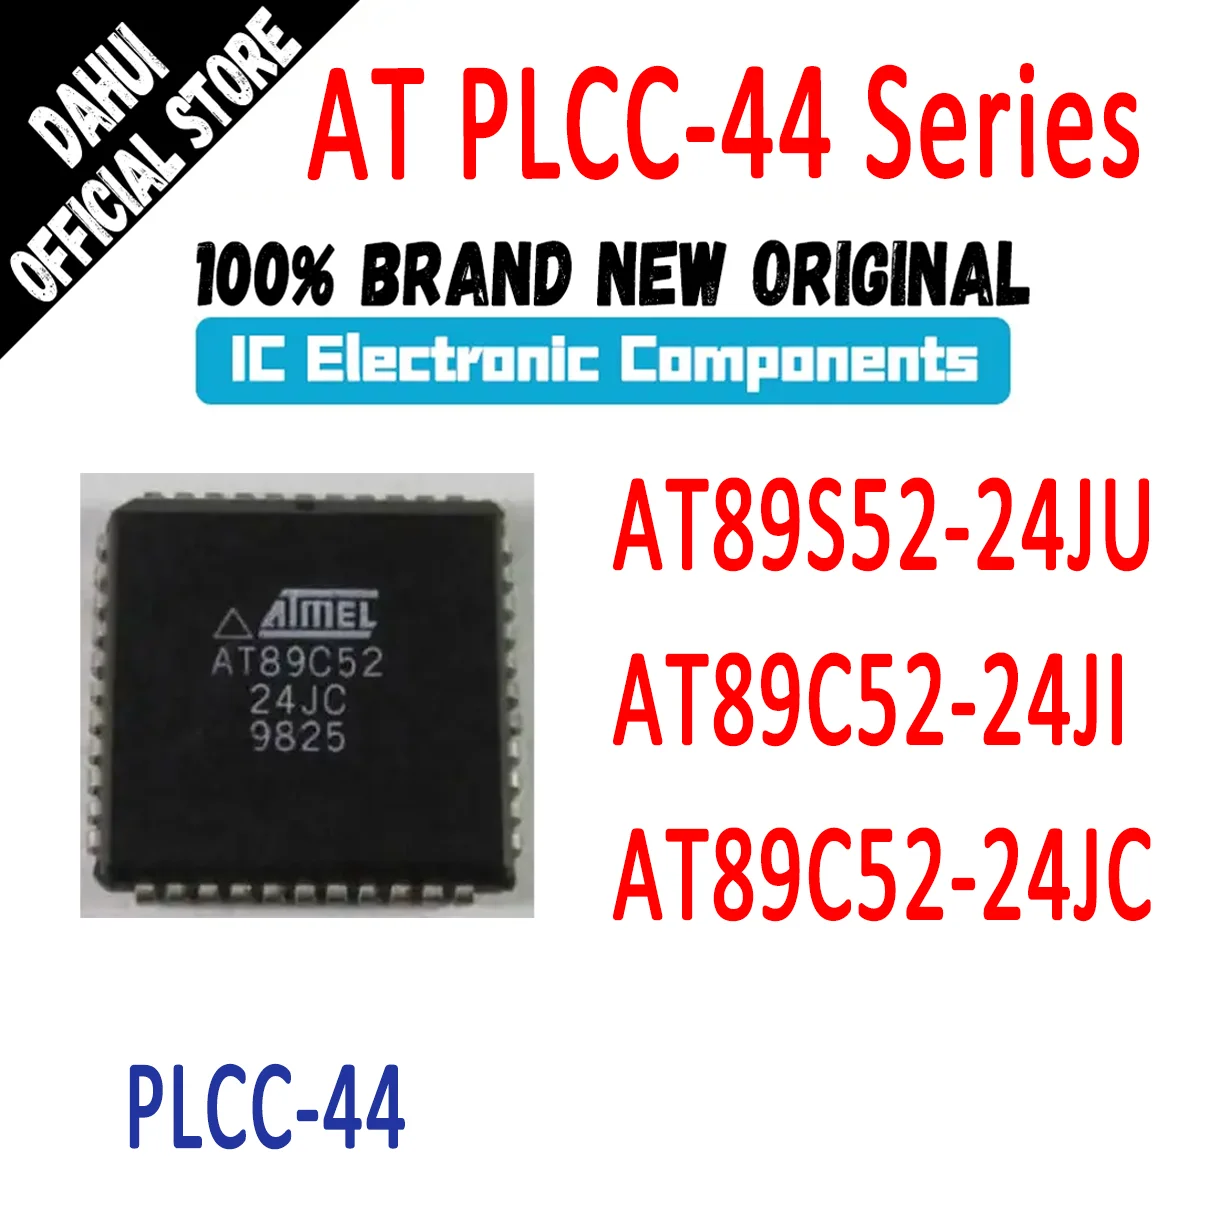 

AT89C52-24JC AT89C52-24JI AT89S52-24JU AT89C52-24 AT89S52-24 AT89C52 AT89S52 AT89C AT89S AT89 AT IC MCU Chip PLCC-44